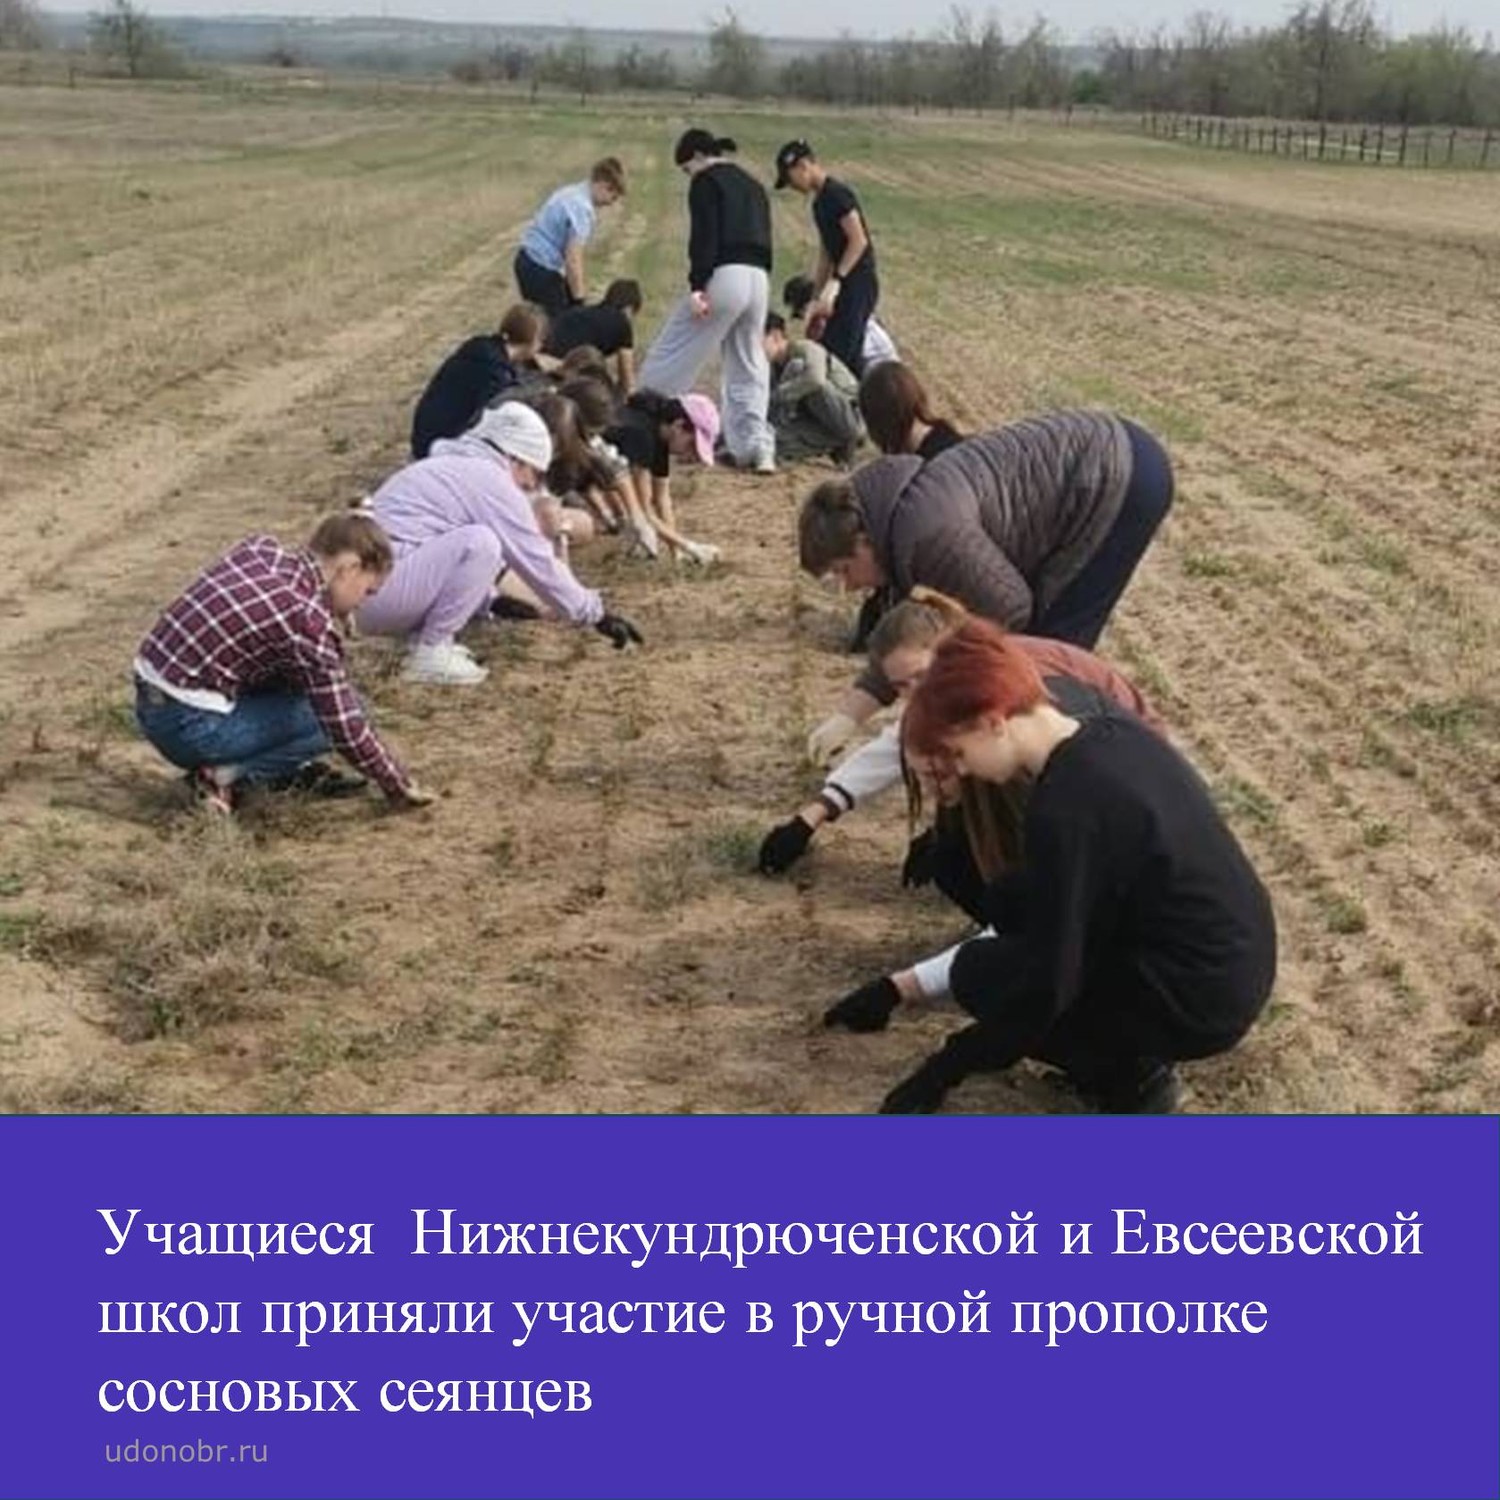 Учащиеся Нижнекундрюченской и Евсеевской школ приняли участие в ручной прополке сосновых сеянцев